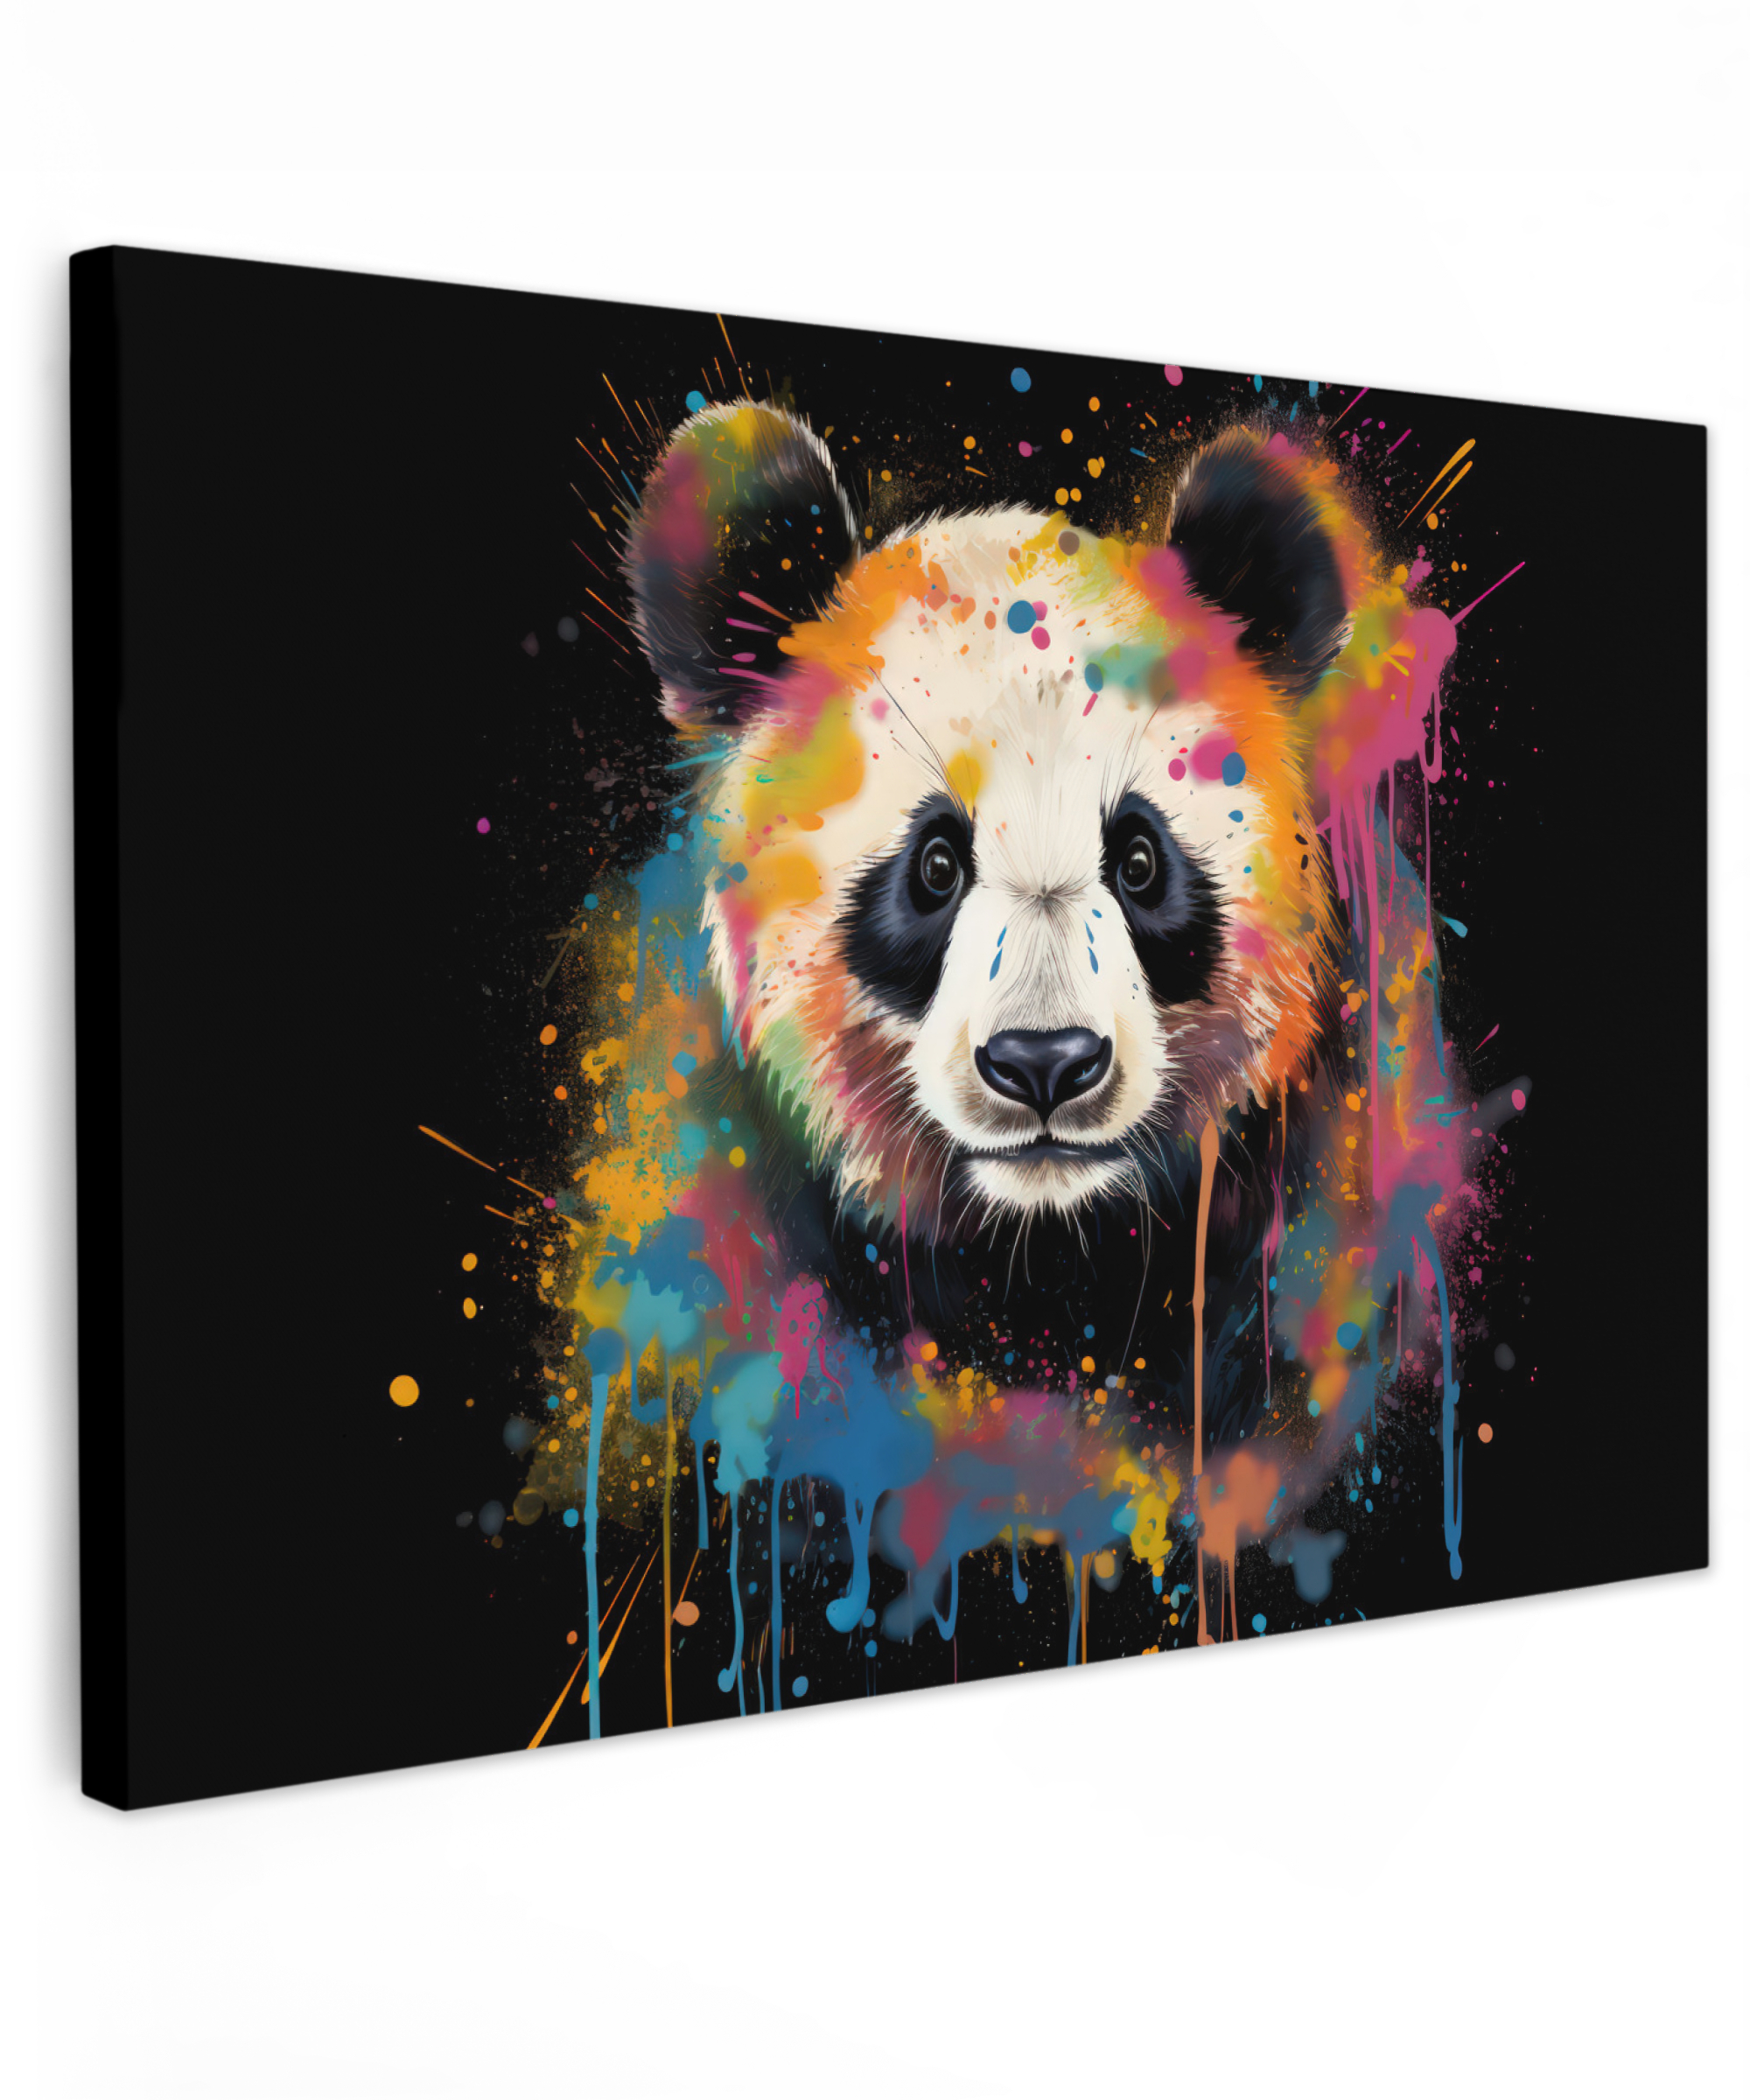 Leinwandbild - Panda - Graffiti - Tiere - Schwarz - Farben